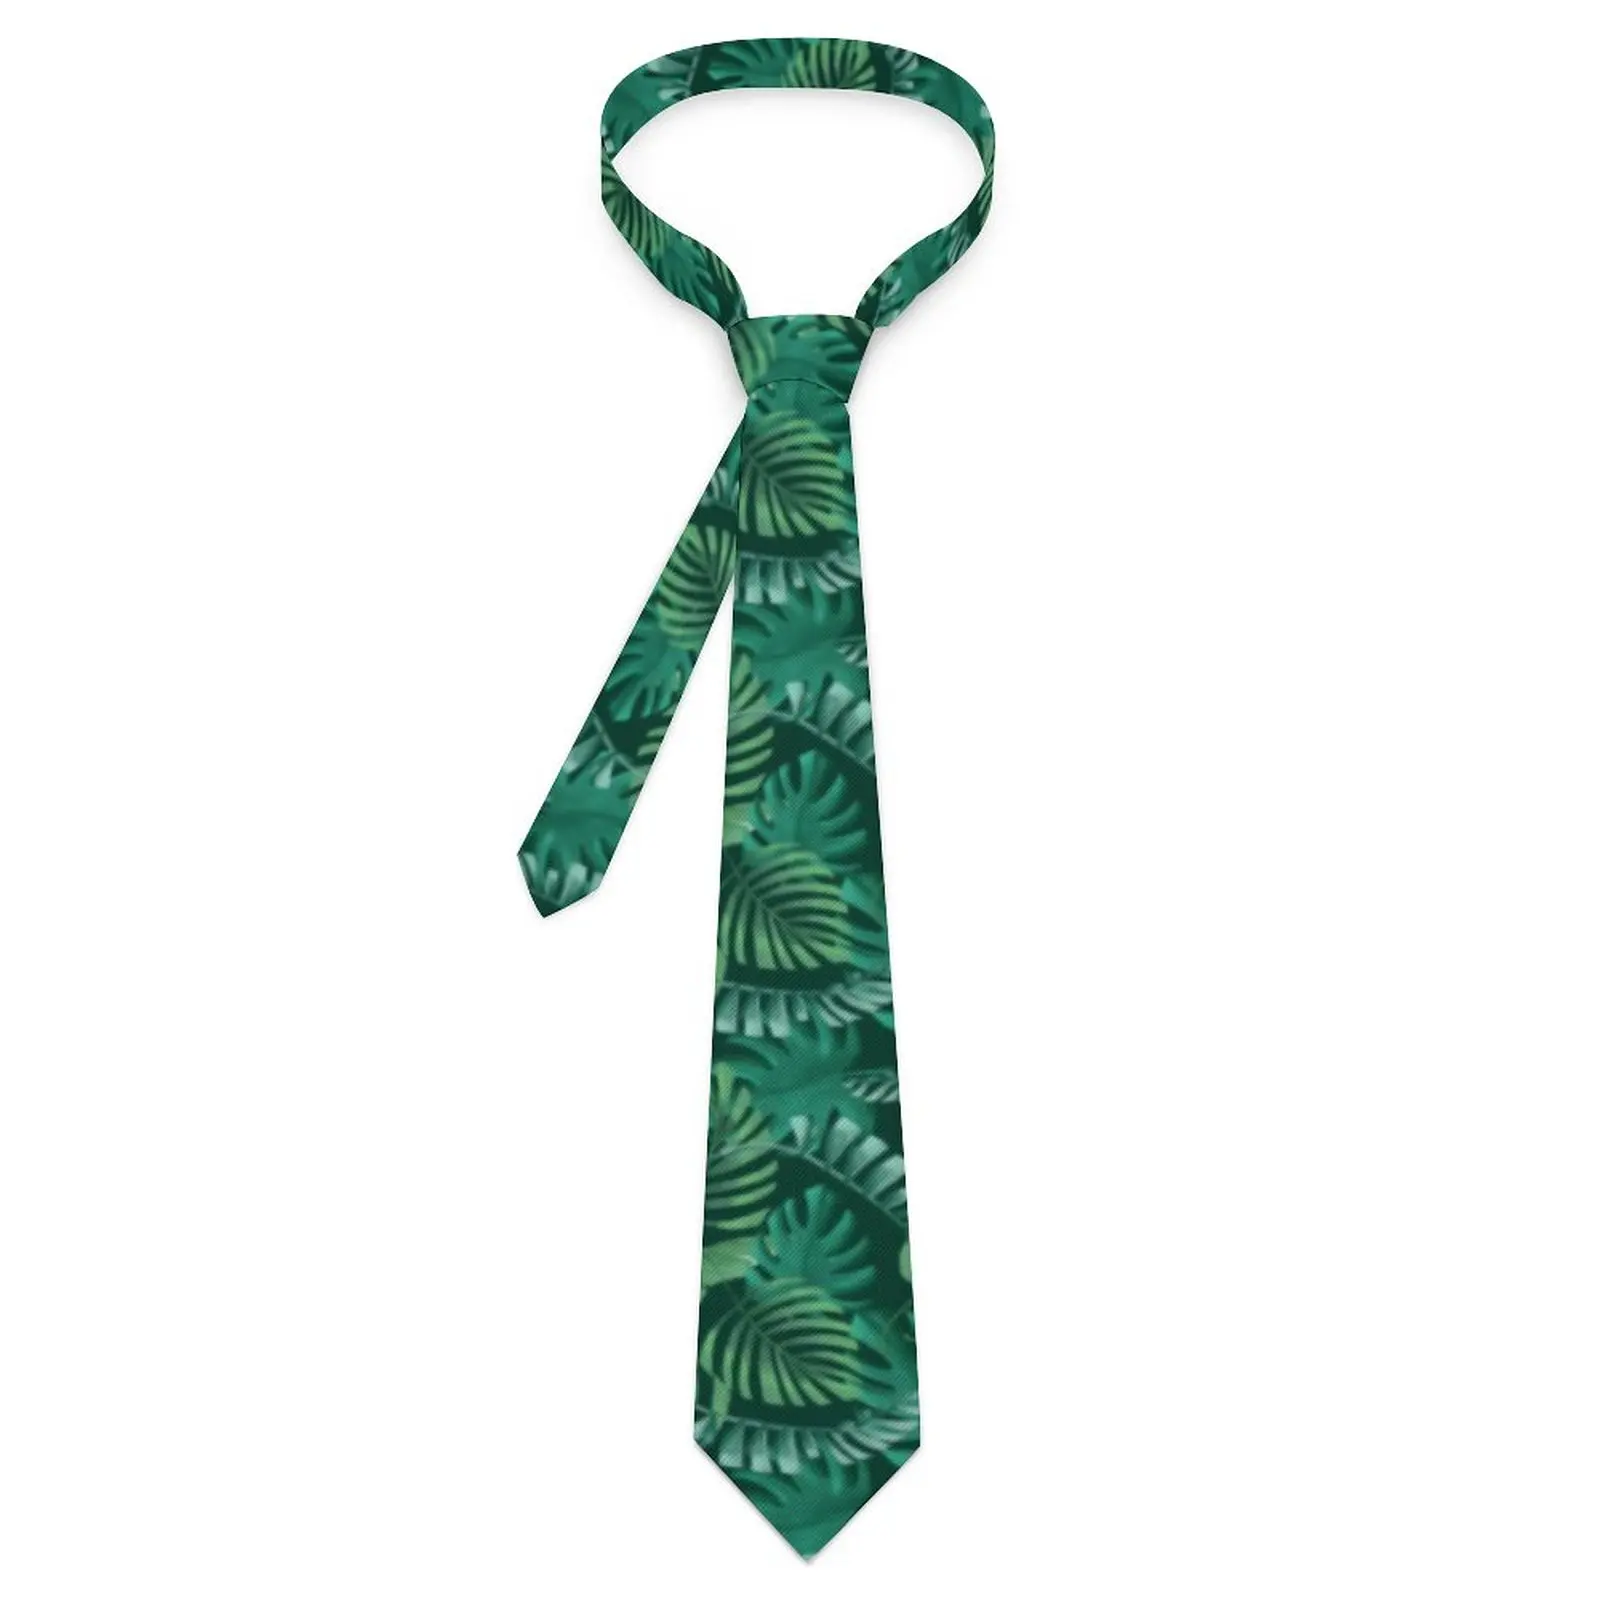 

Галстук с тропическим принтом листьев, галстук с рисунком пальмовых листьев, ретро повседневный галстук-воротник для мужчин и женщин, деловой ГАЛСТУК